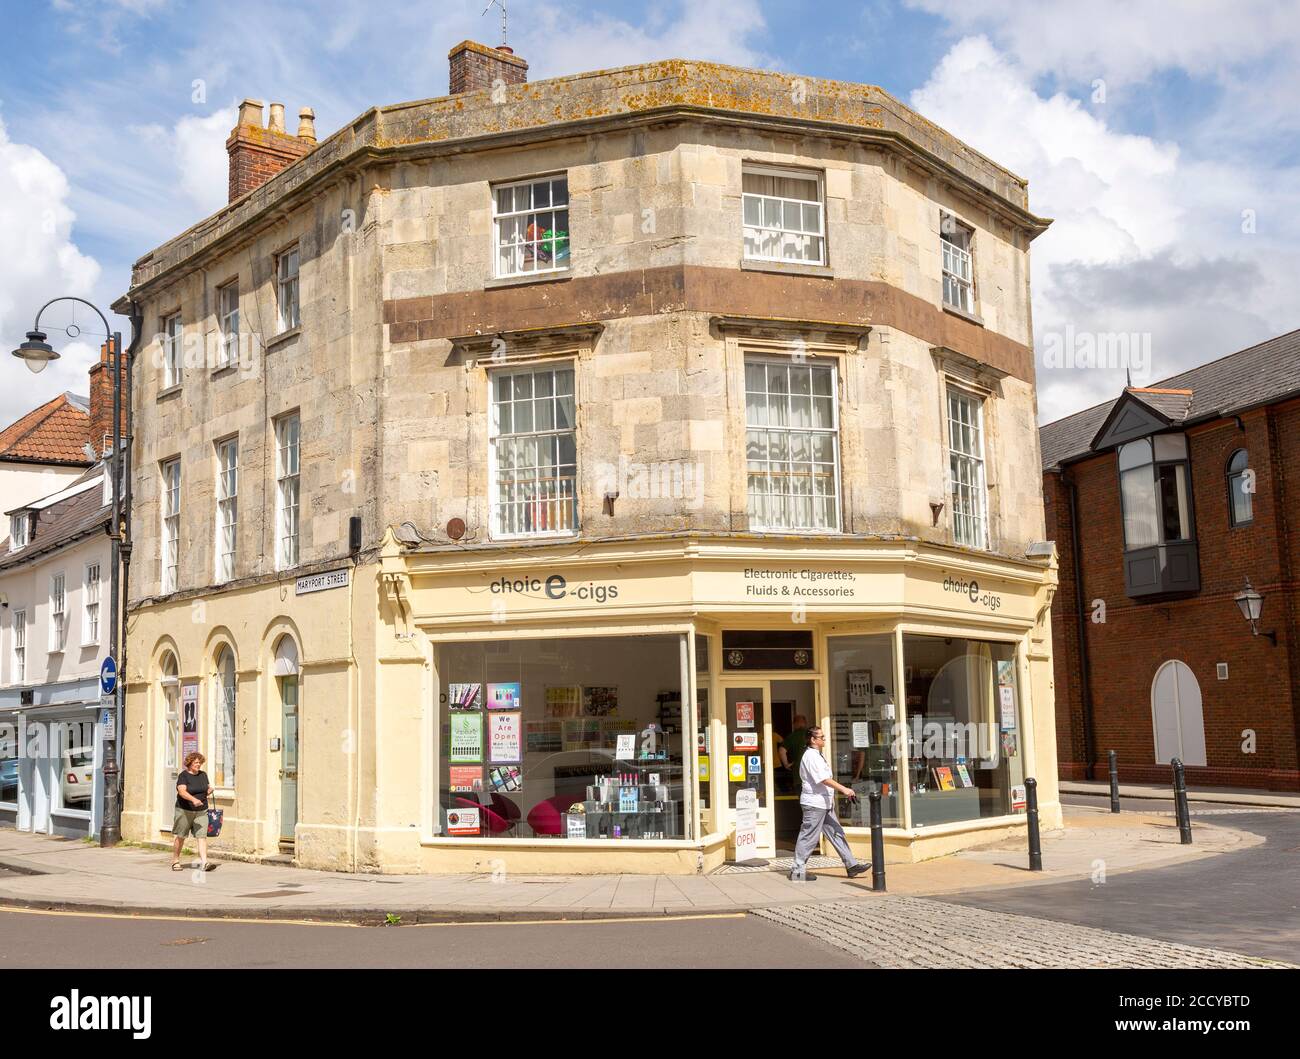 Bâtiment historique en pierre de Bath du XIXe siècle, à l'angle de Maryport Street, Devozes, Wiltshire, Angleterre, magasin britannique Choice-cigs Banque D'Images